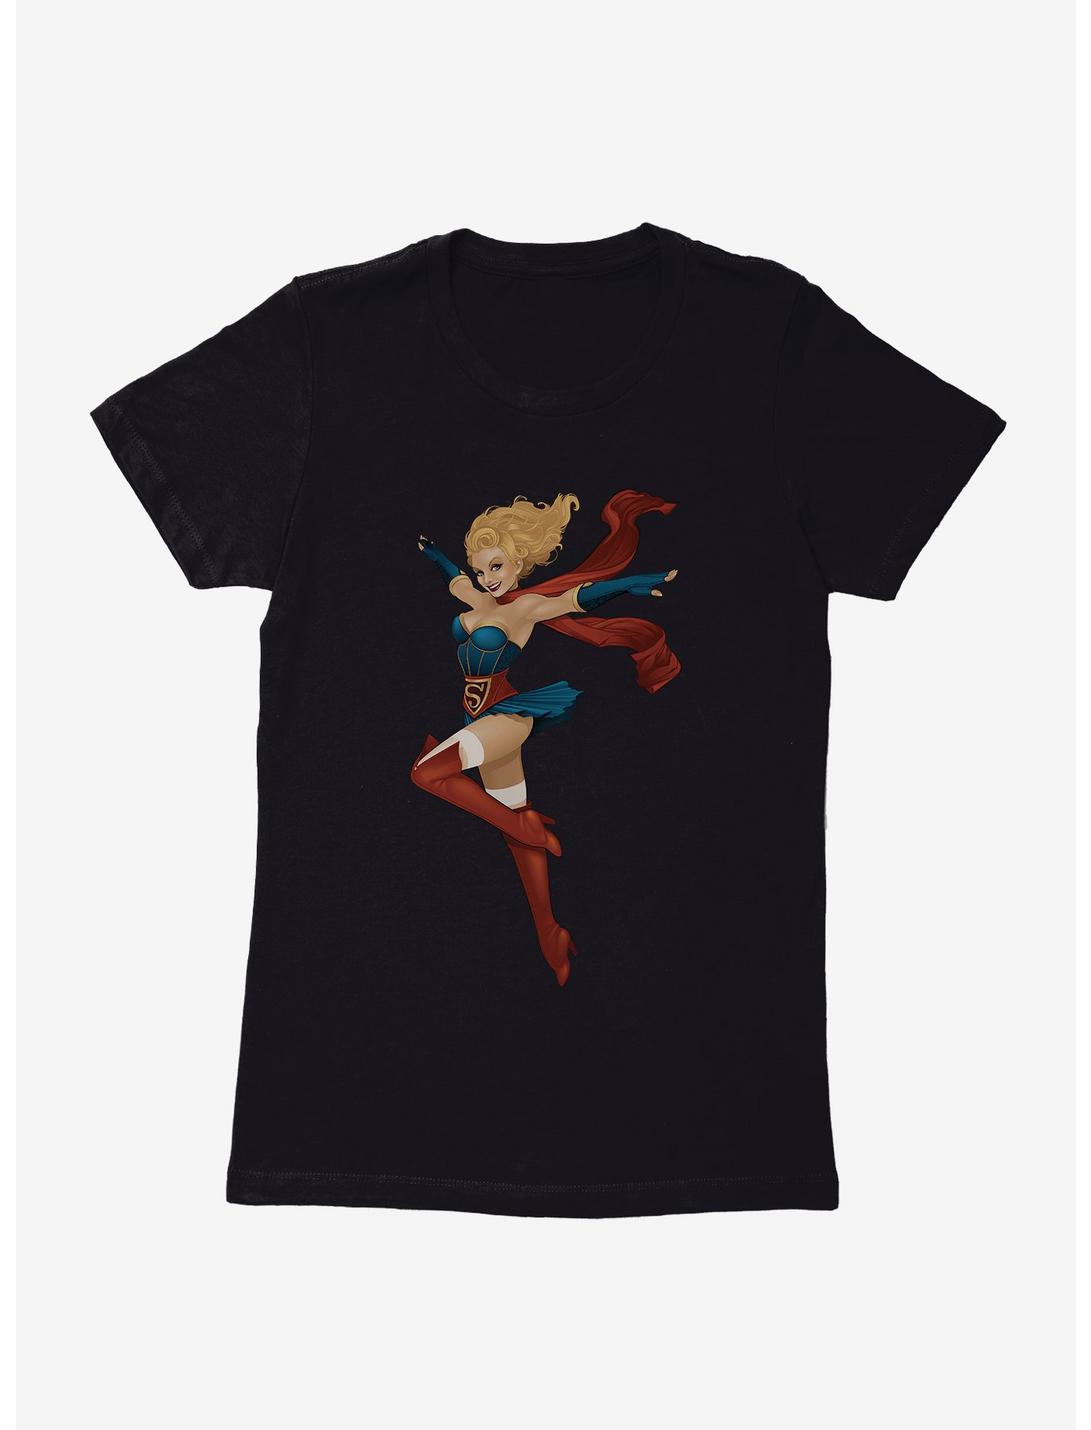 DC Comics Bombshells Supergirl Womens Black T-Shirt, BLACK, hi-res